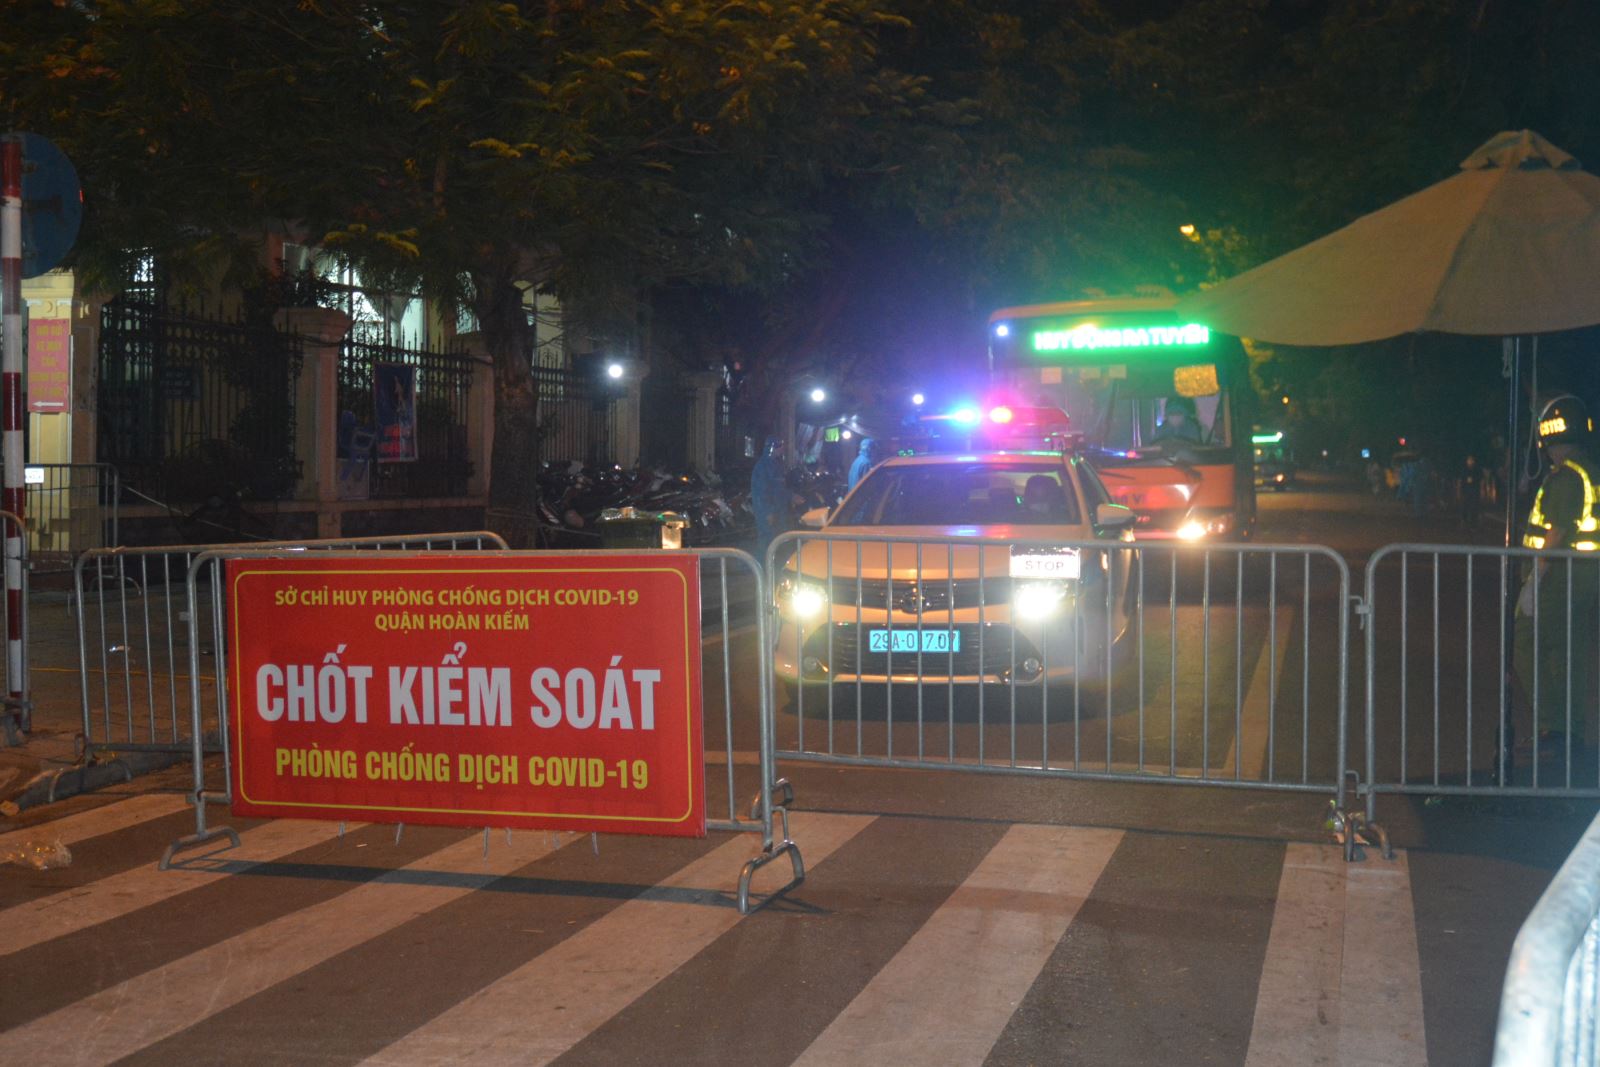 Blockade of many streets near Viet Duc Hospital